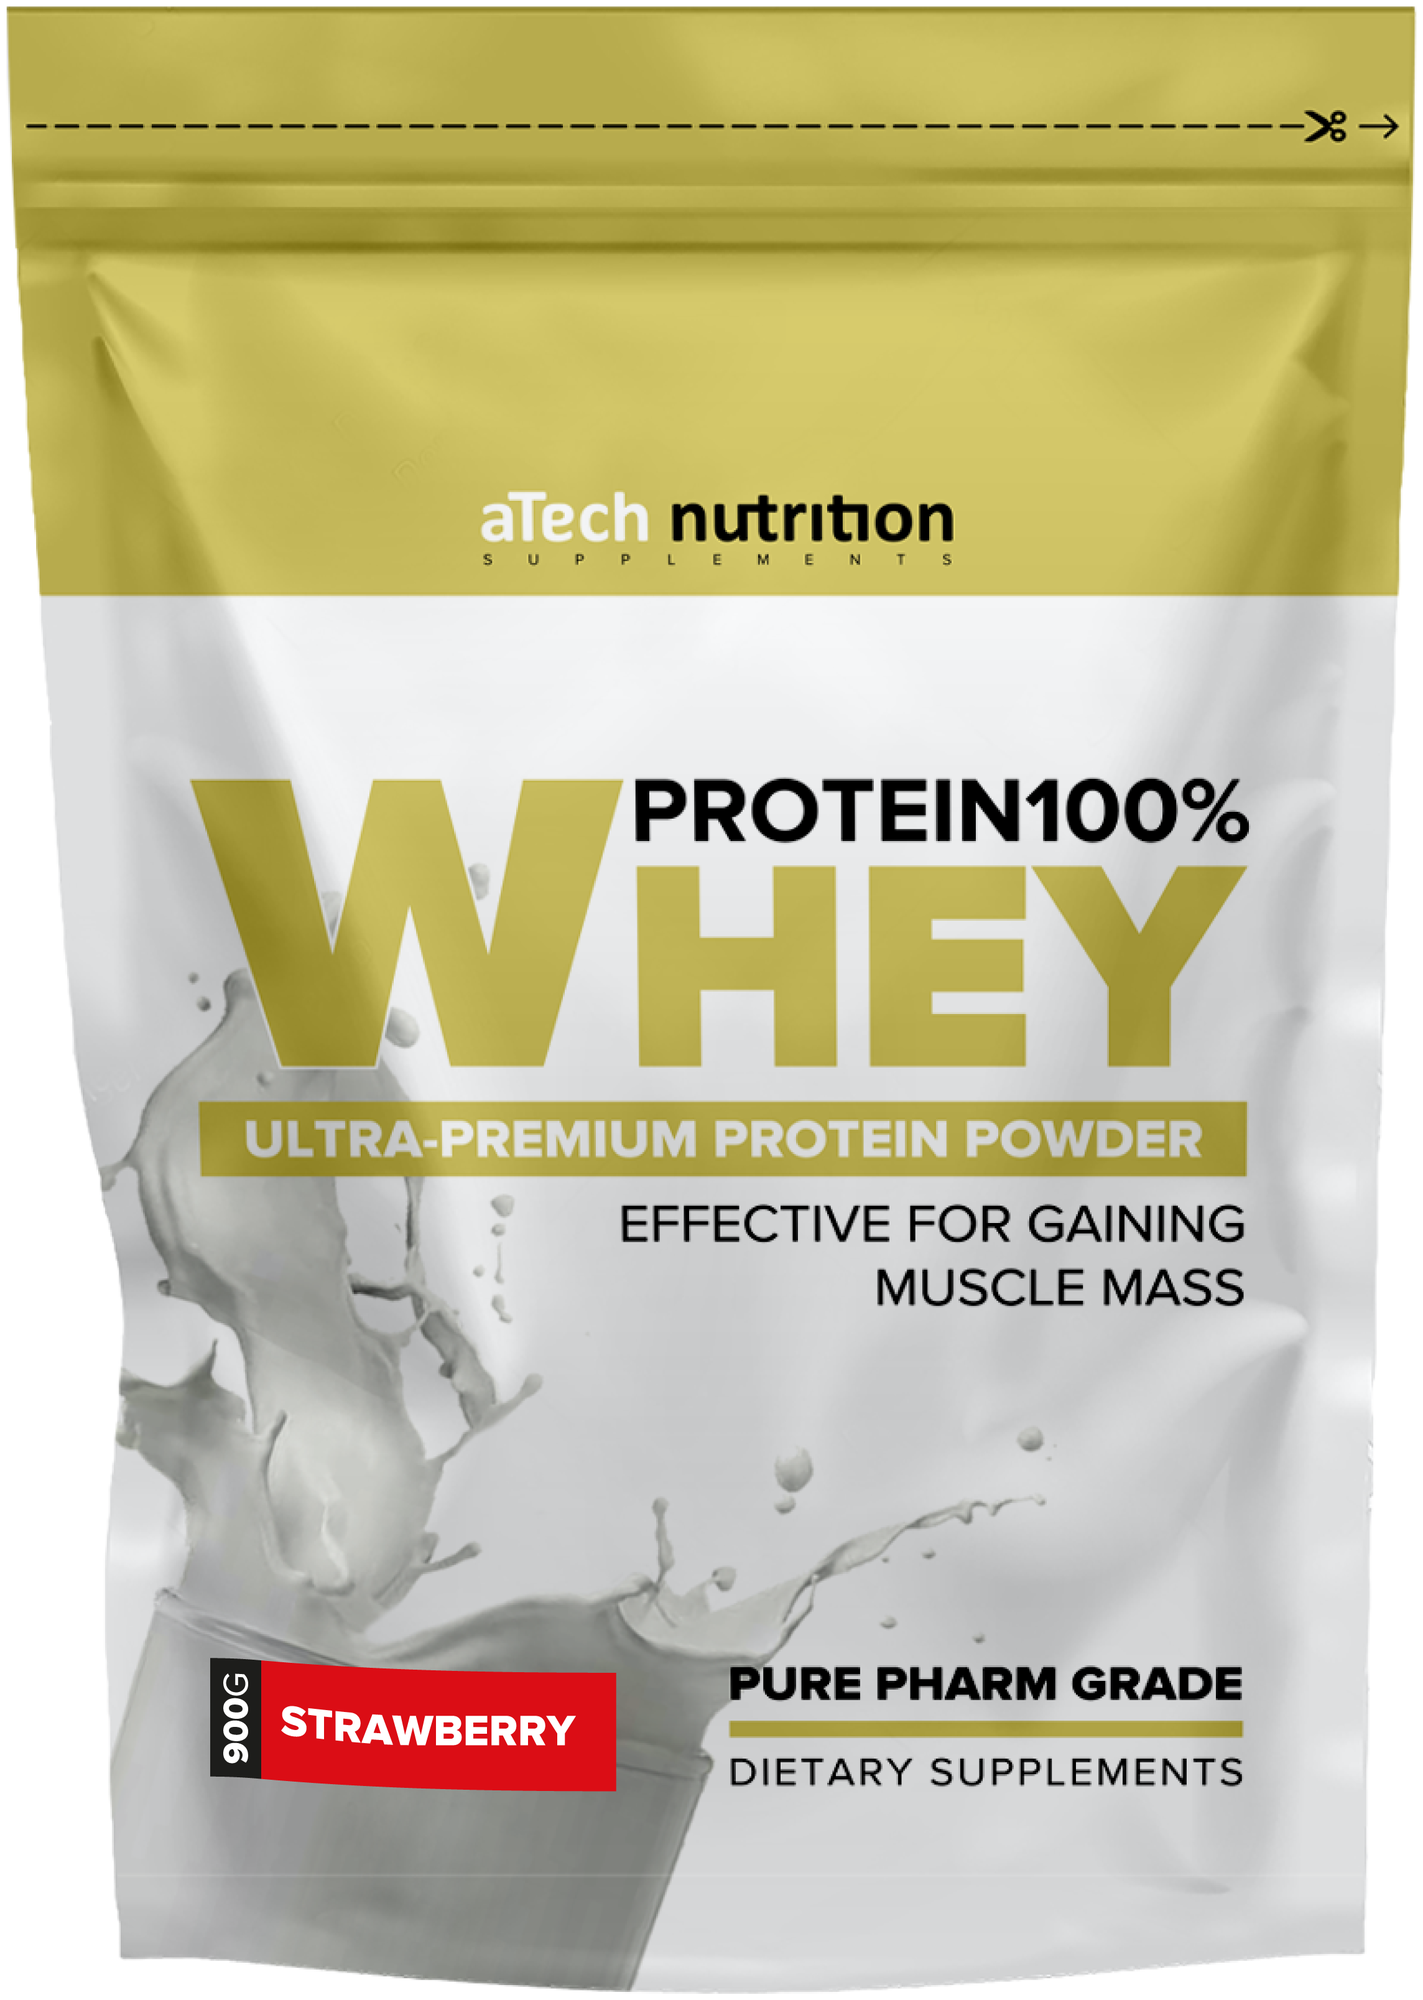 Специализированный пищевой продукт для питания спортсменов "Вэй протеин 100% Спешл Сериес" ("Whey protein 100% Special Series") пакет 0,9 кг со вкусом "Клубника"